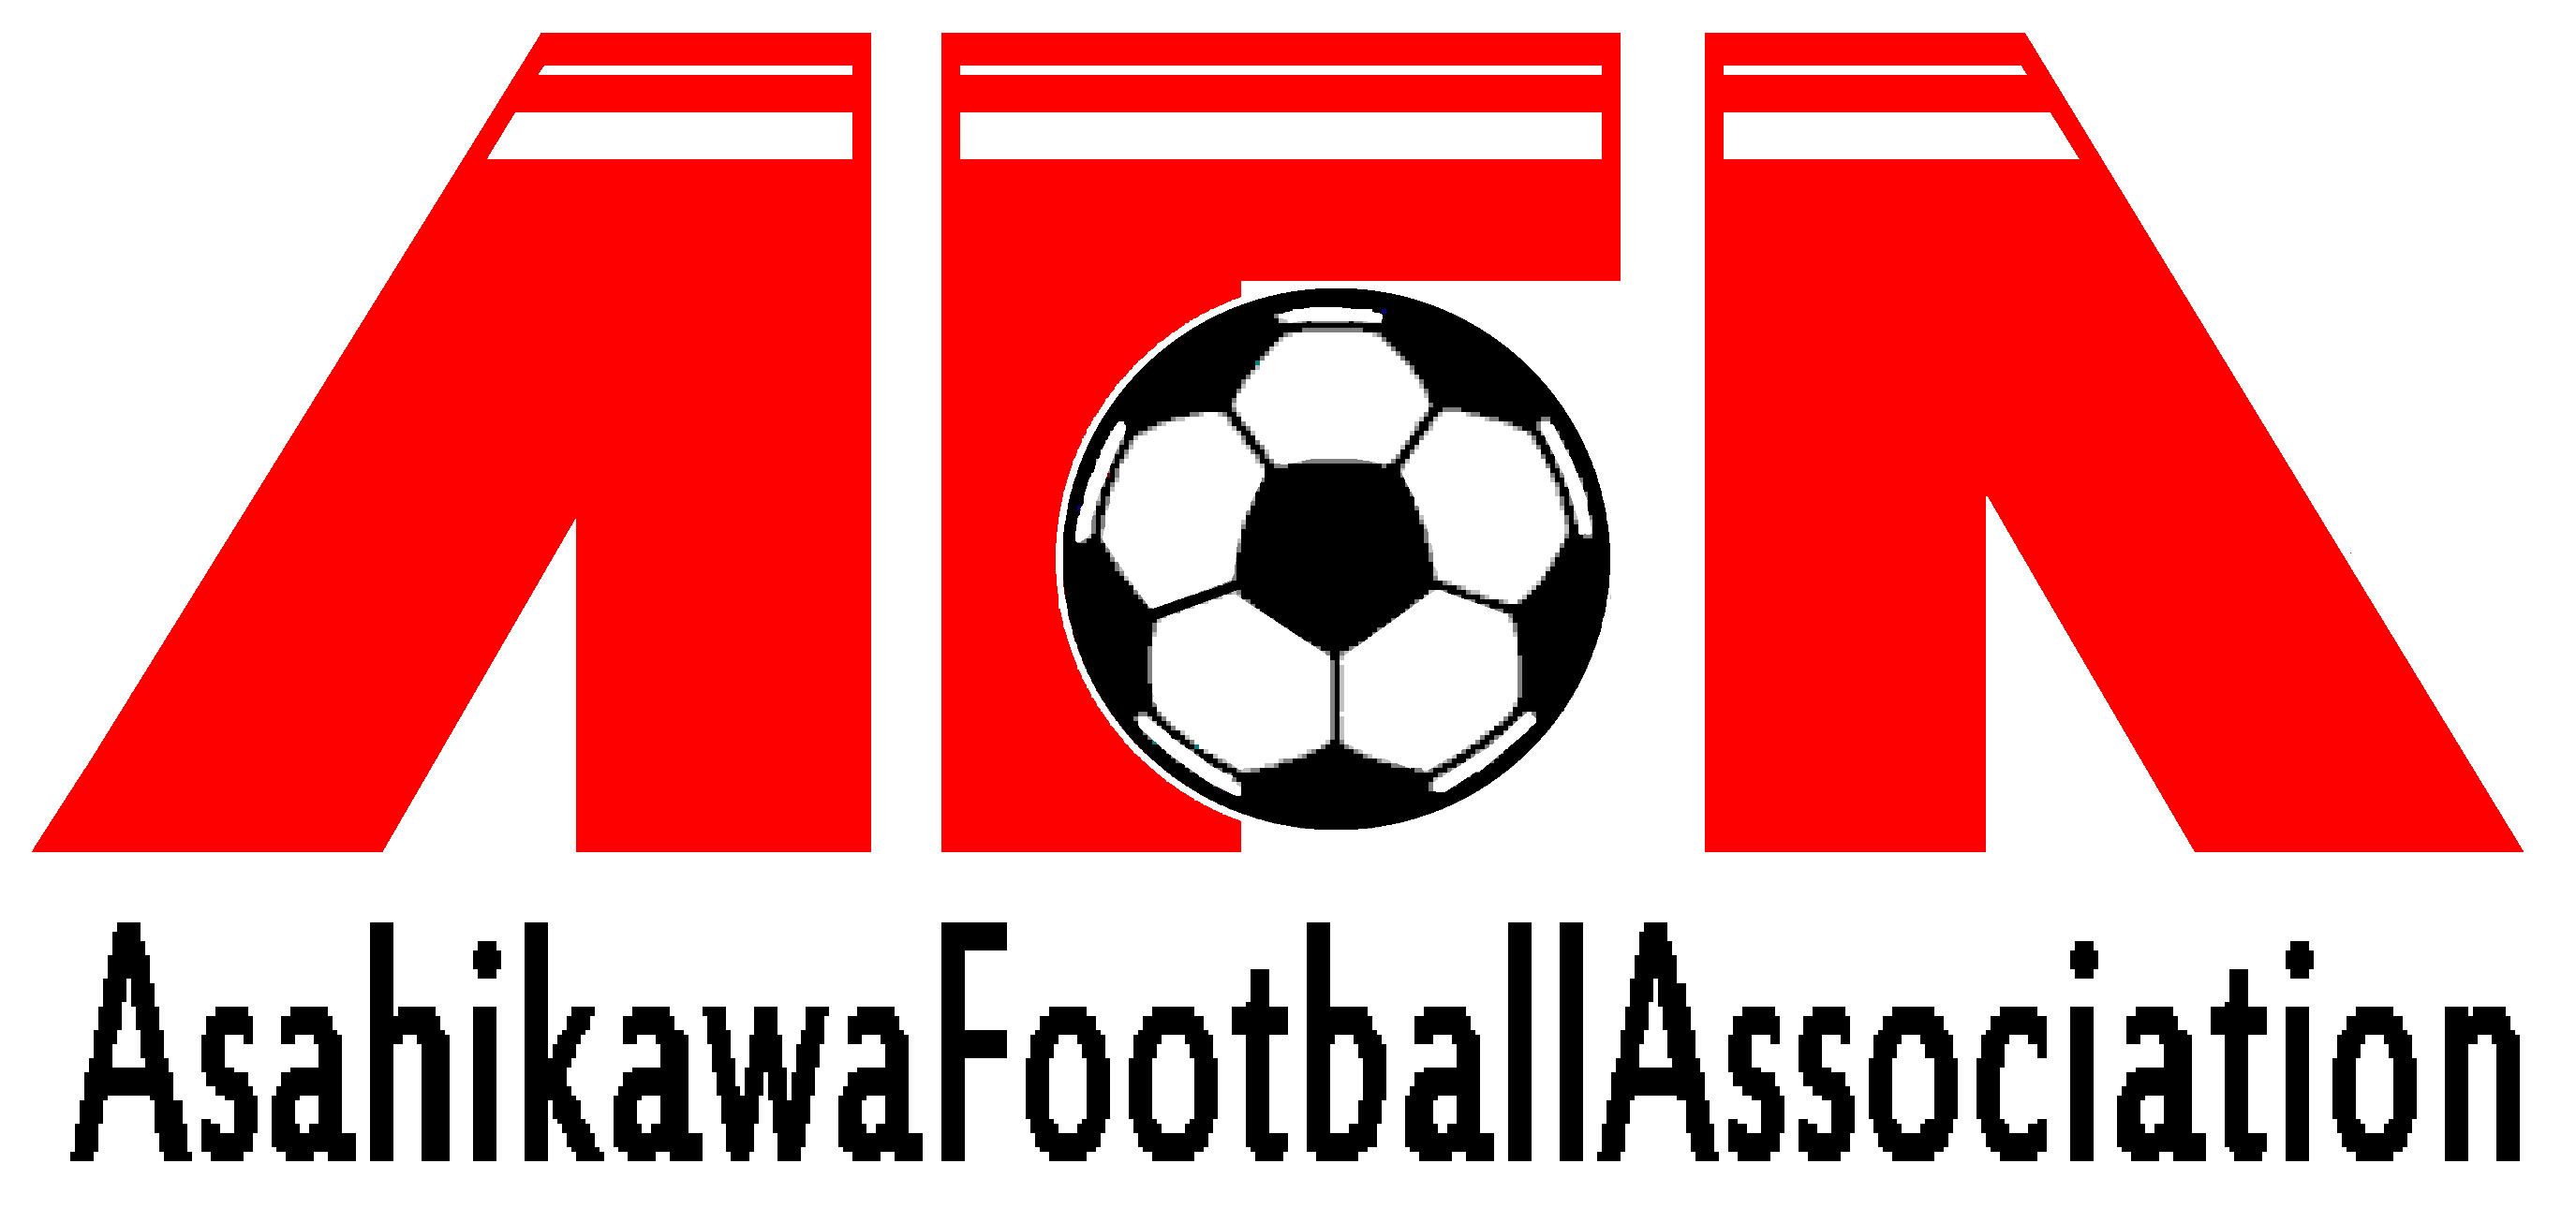 旭川地区サッカー協会事務所の体制について